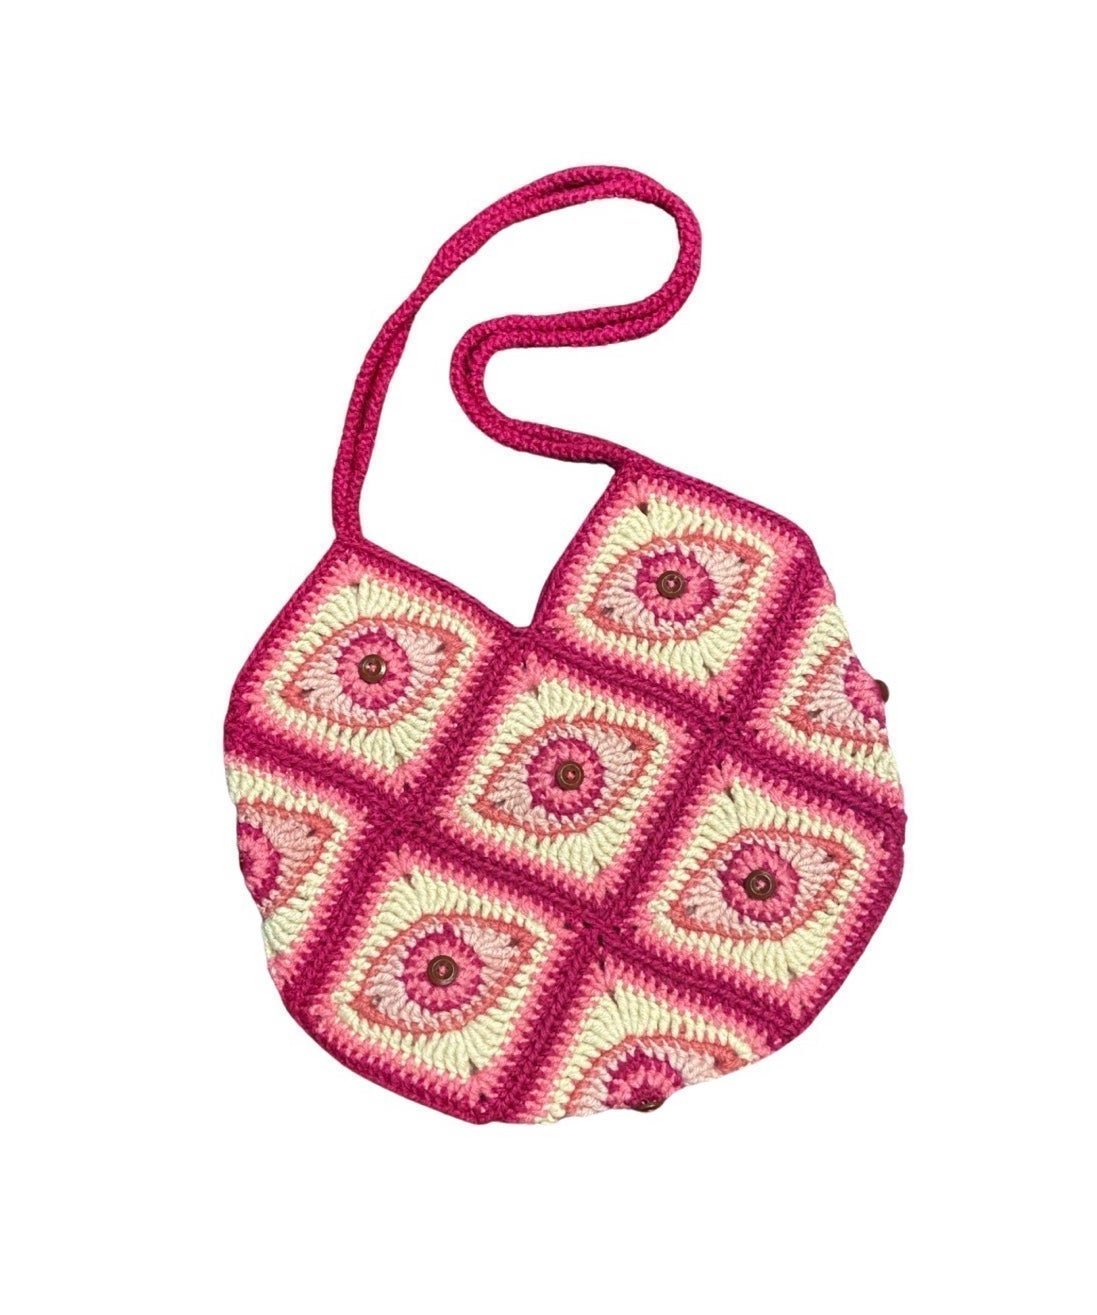 Crochet “Pinkeye” Bag Cxrzyx44C